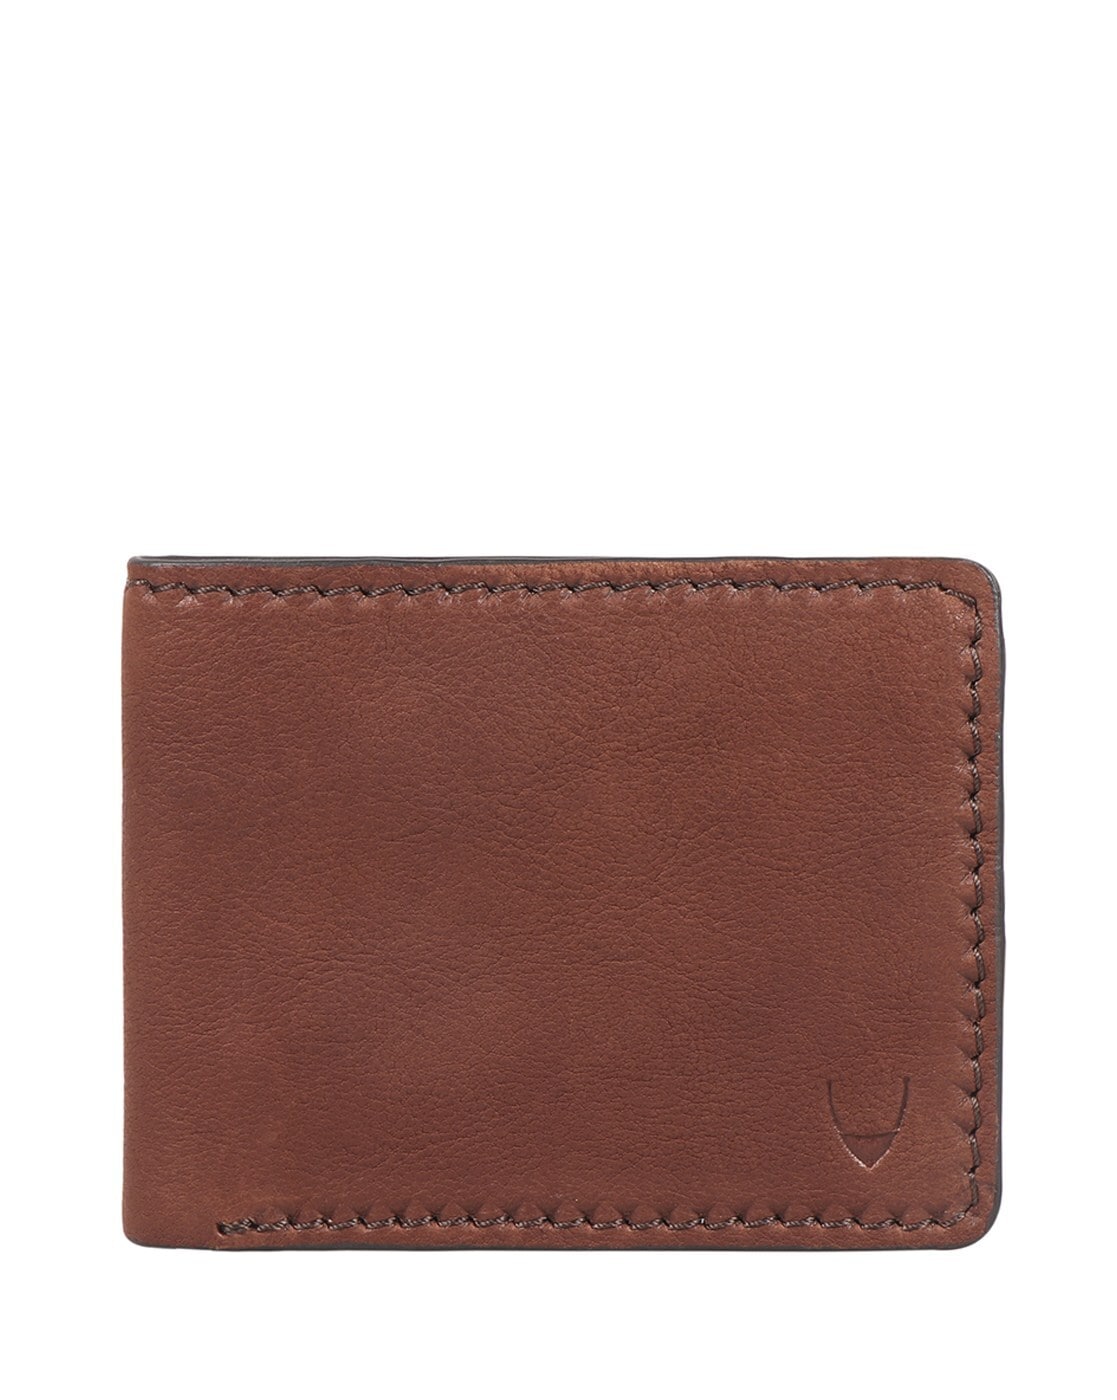 Buy Hidesign Merlot-Deer Lamb Black Leather Bi-Fold Wallet For Men At Best  Price @ Tata CLiQ